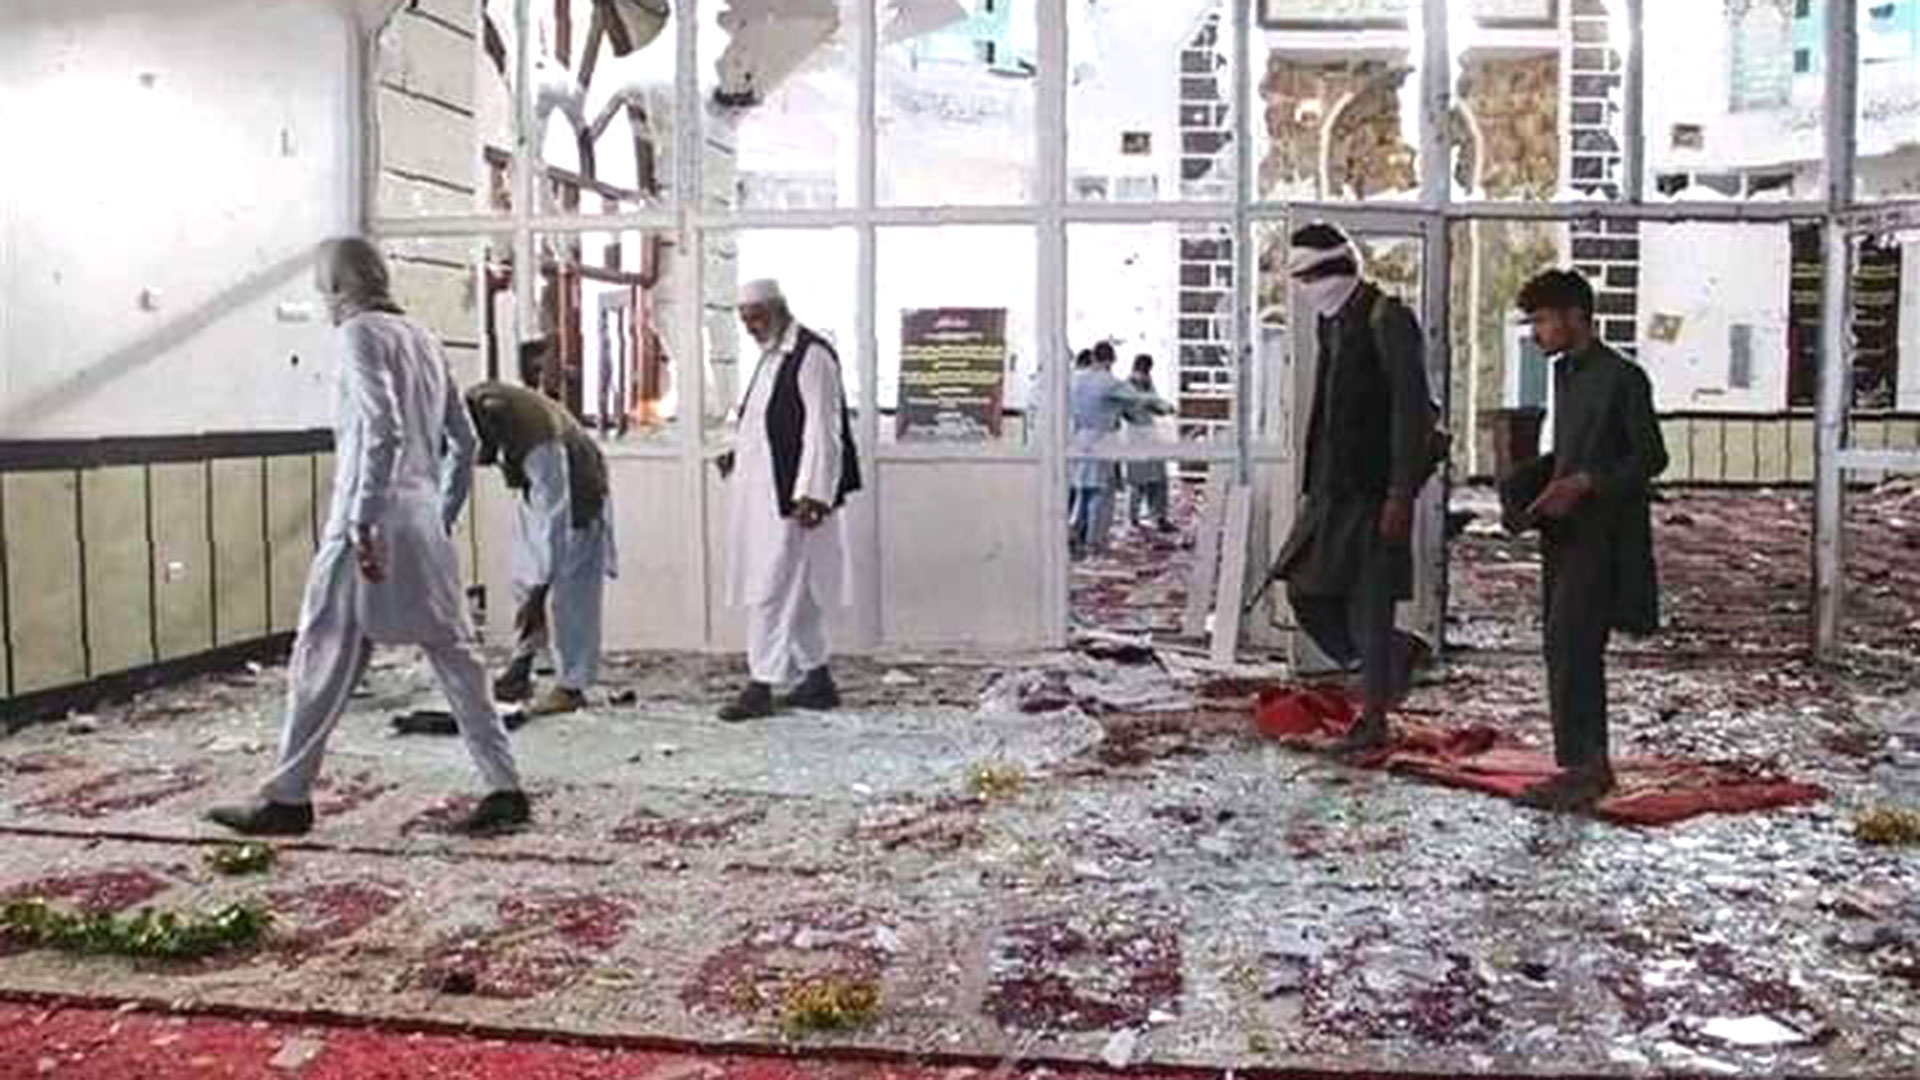 El atentado en la mezquita de la provincia de Nangarhar, al este de Afganistán (@ashershahir)